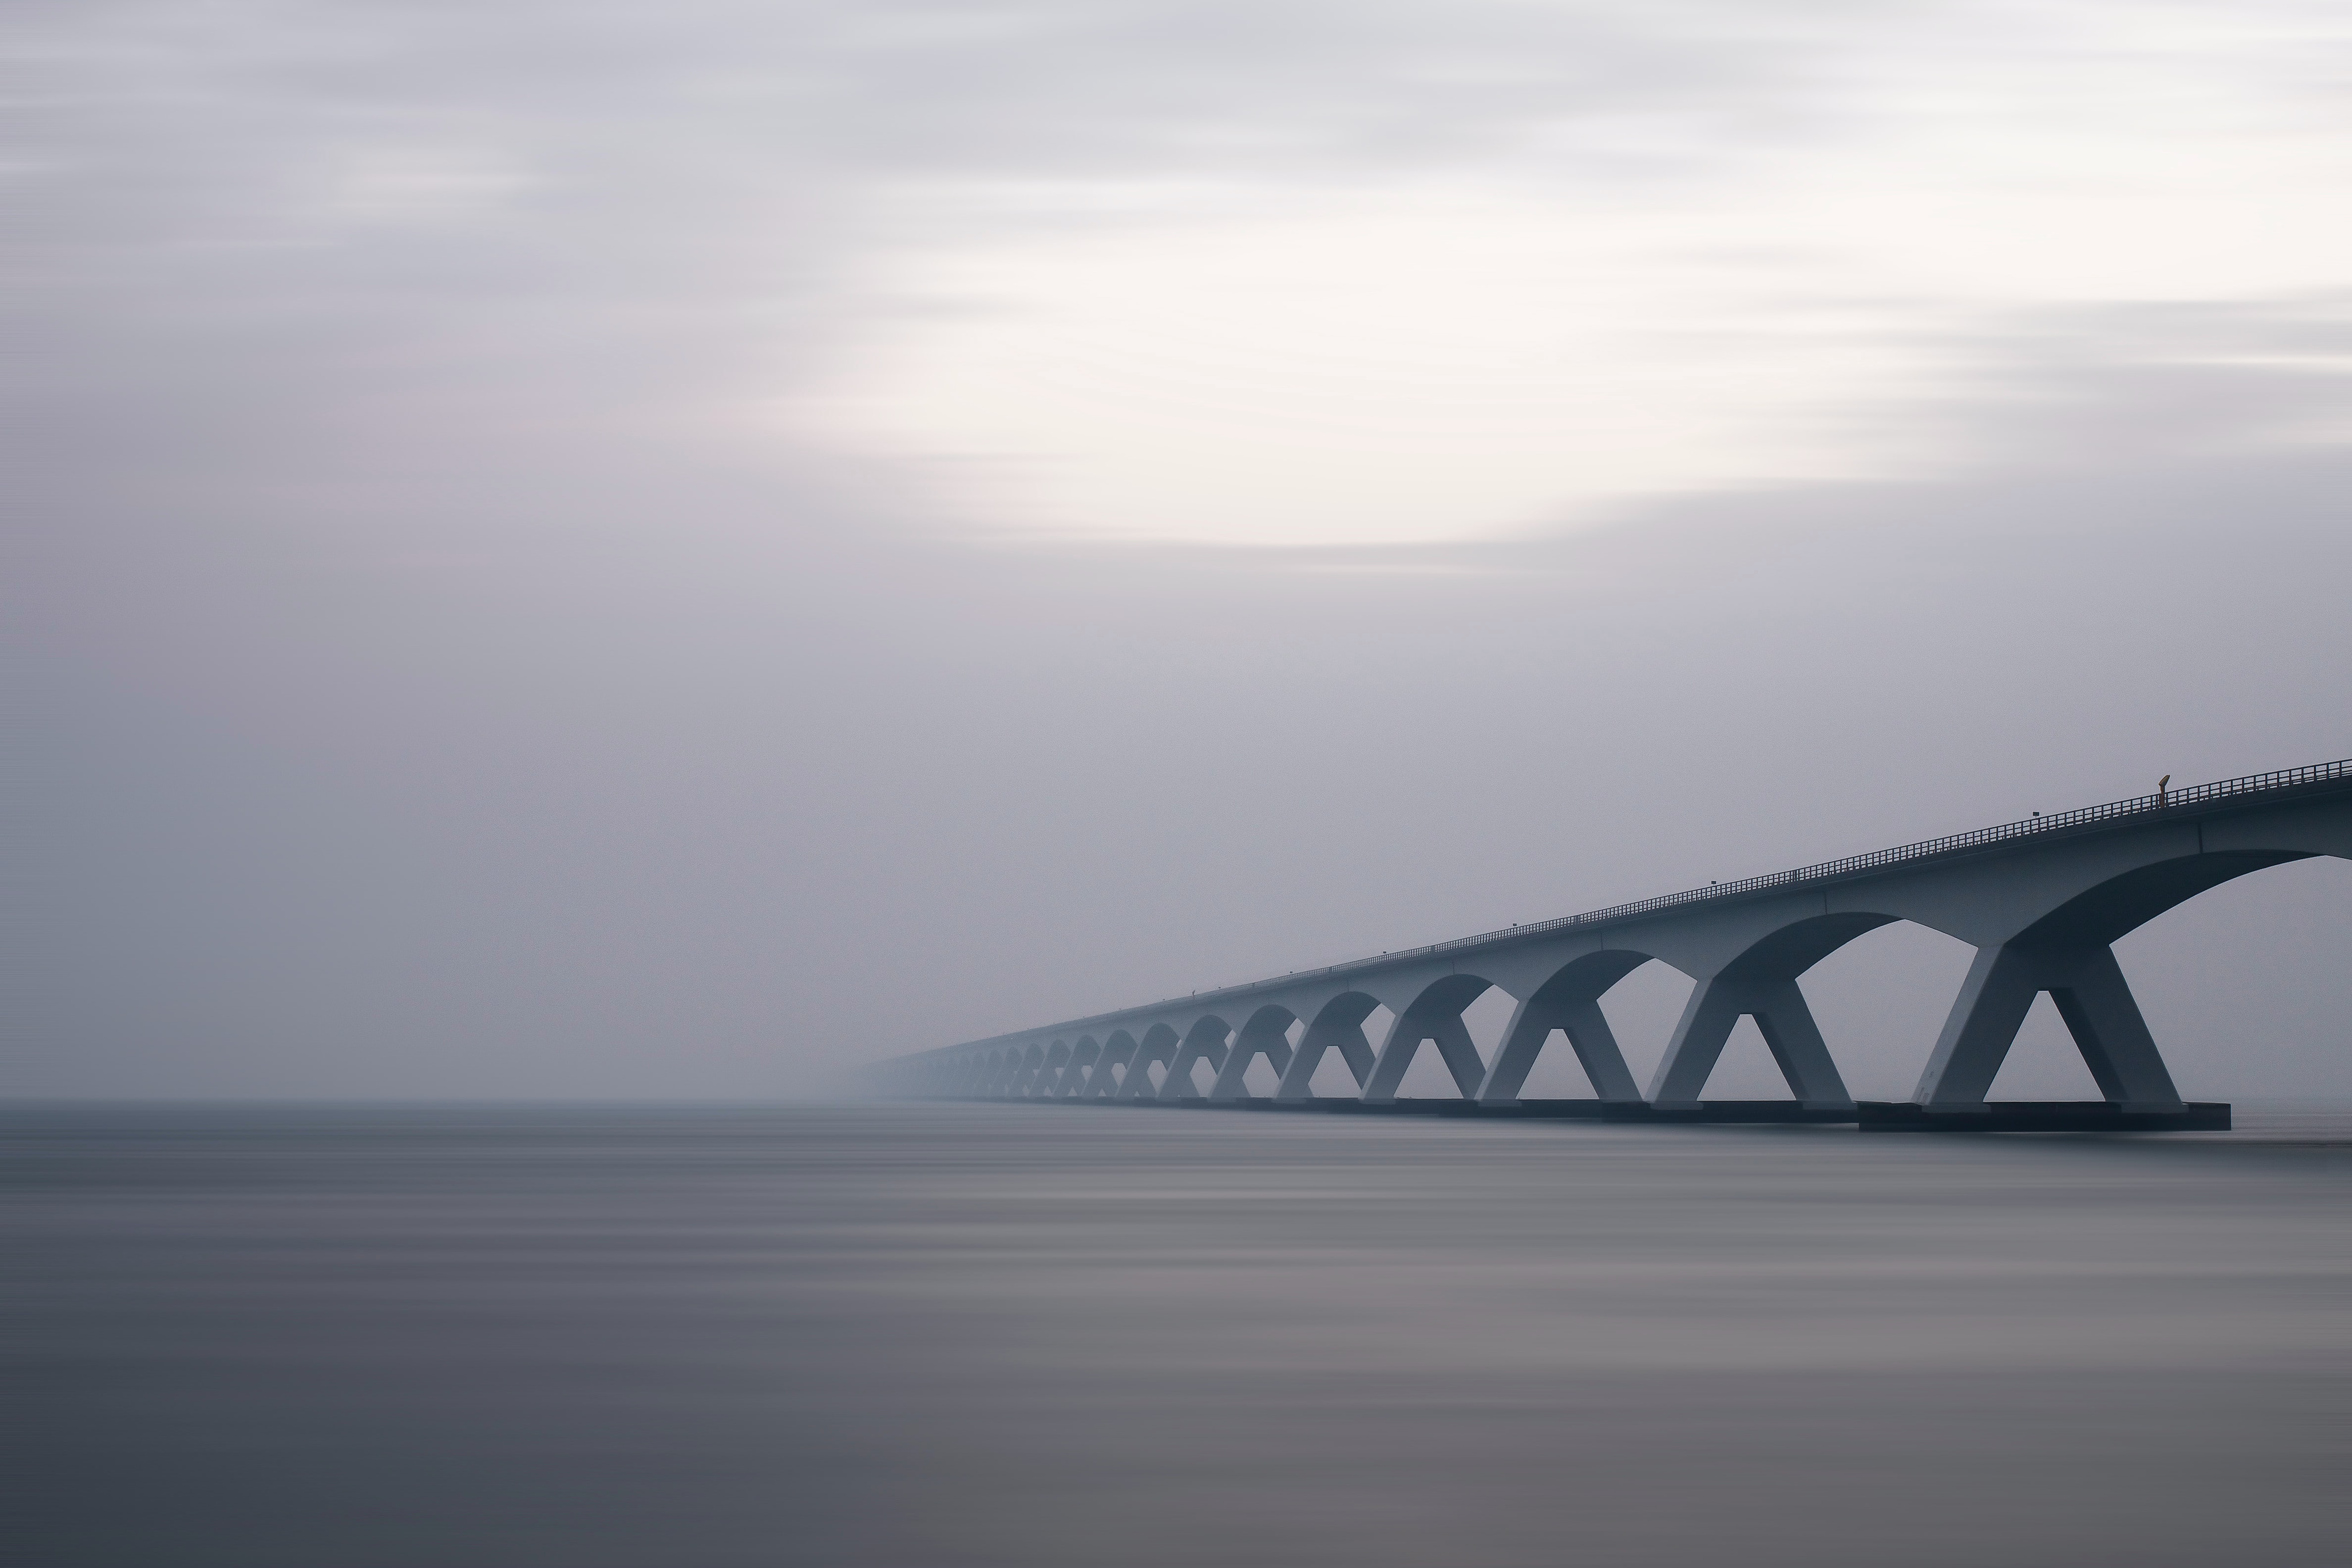 The Zeeland Bridge - longest bridge in the Netherlands by Tom van Hoogstraten